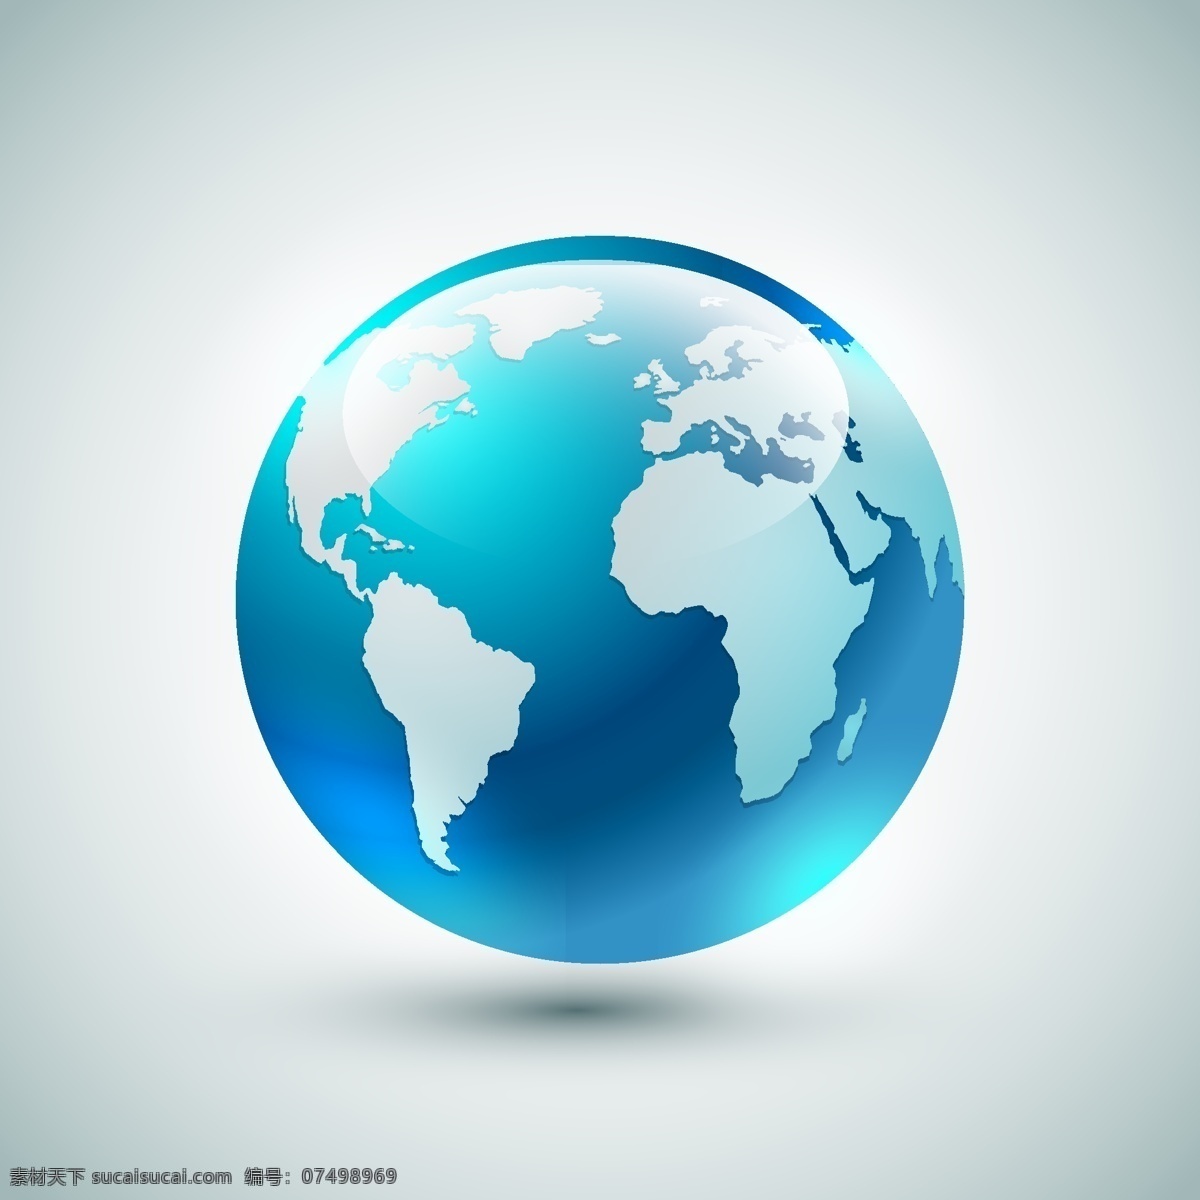 地球背景 地球仪 蓝色地球 科技地球 蓝色地球展板 绿色地球背景 保护地球 手捧地球 地球科技 网络地球 智慧地球 地球线条 地球运动 地球海报 地球画册 地球展板 地球精神 地球宣传 地球素材 地球模板 地球村 环保地球 绿色地球 地球环境 自然环境 宇宙天体 矢量地球 卡通设计